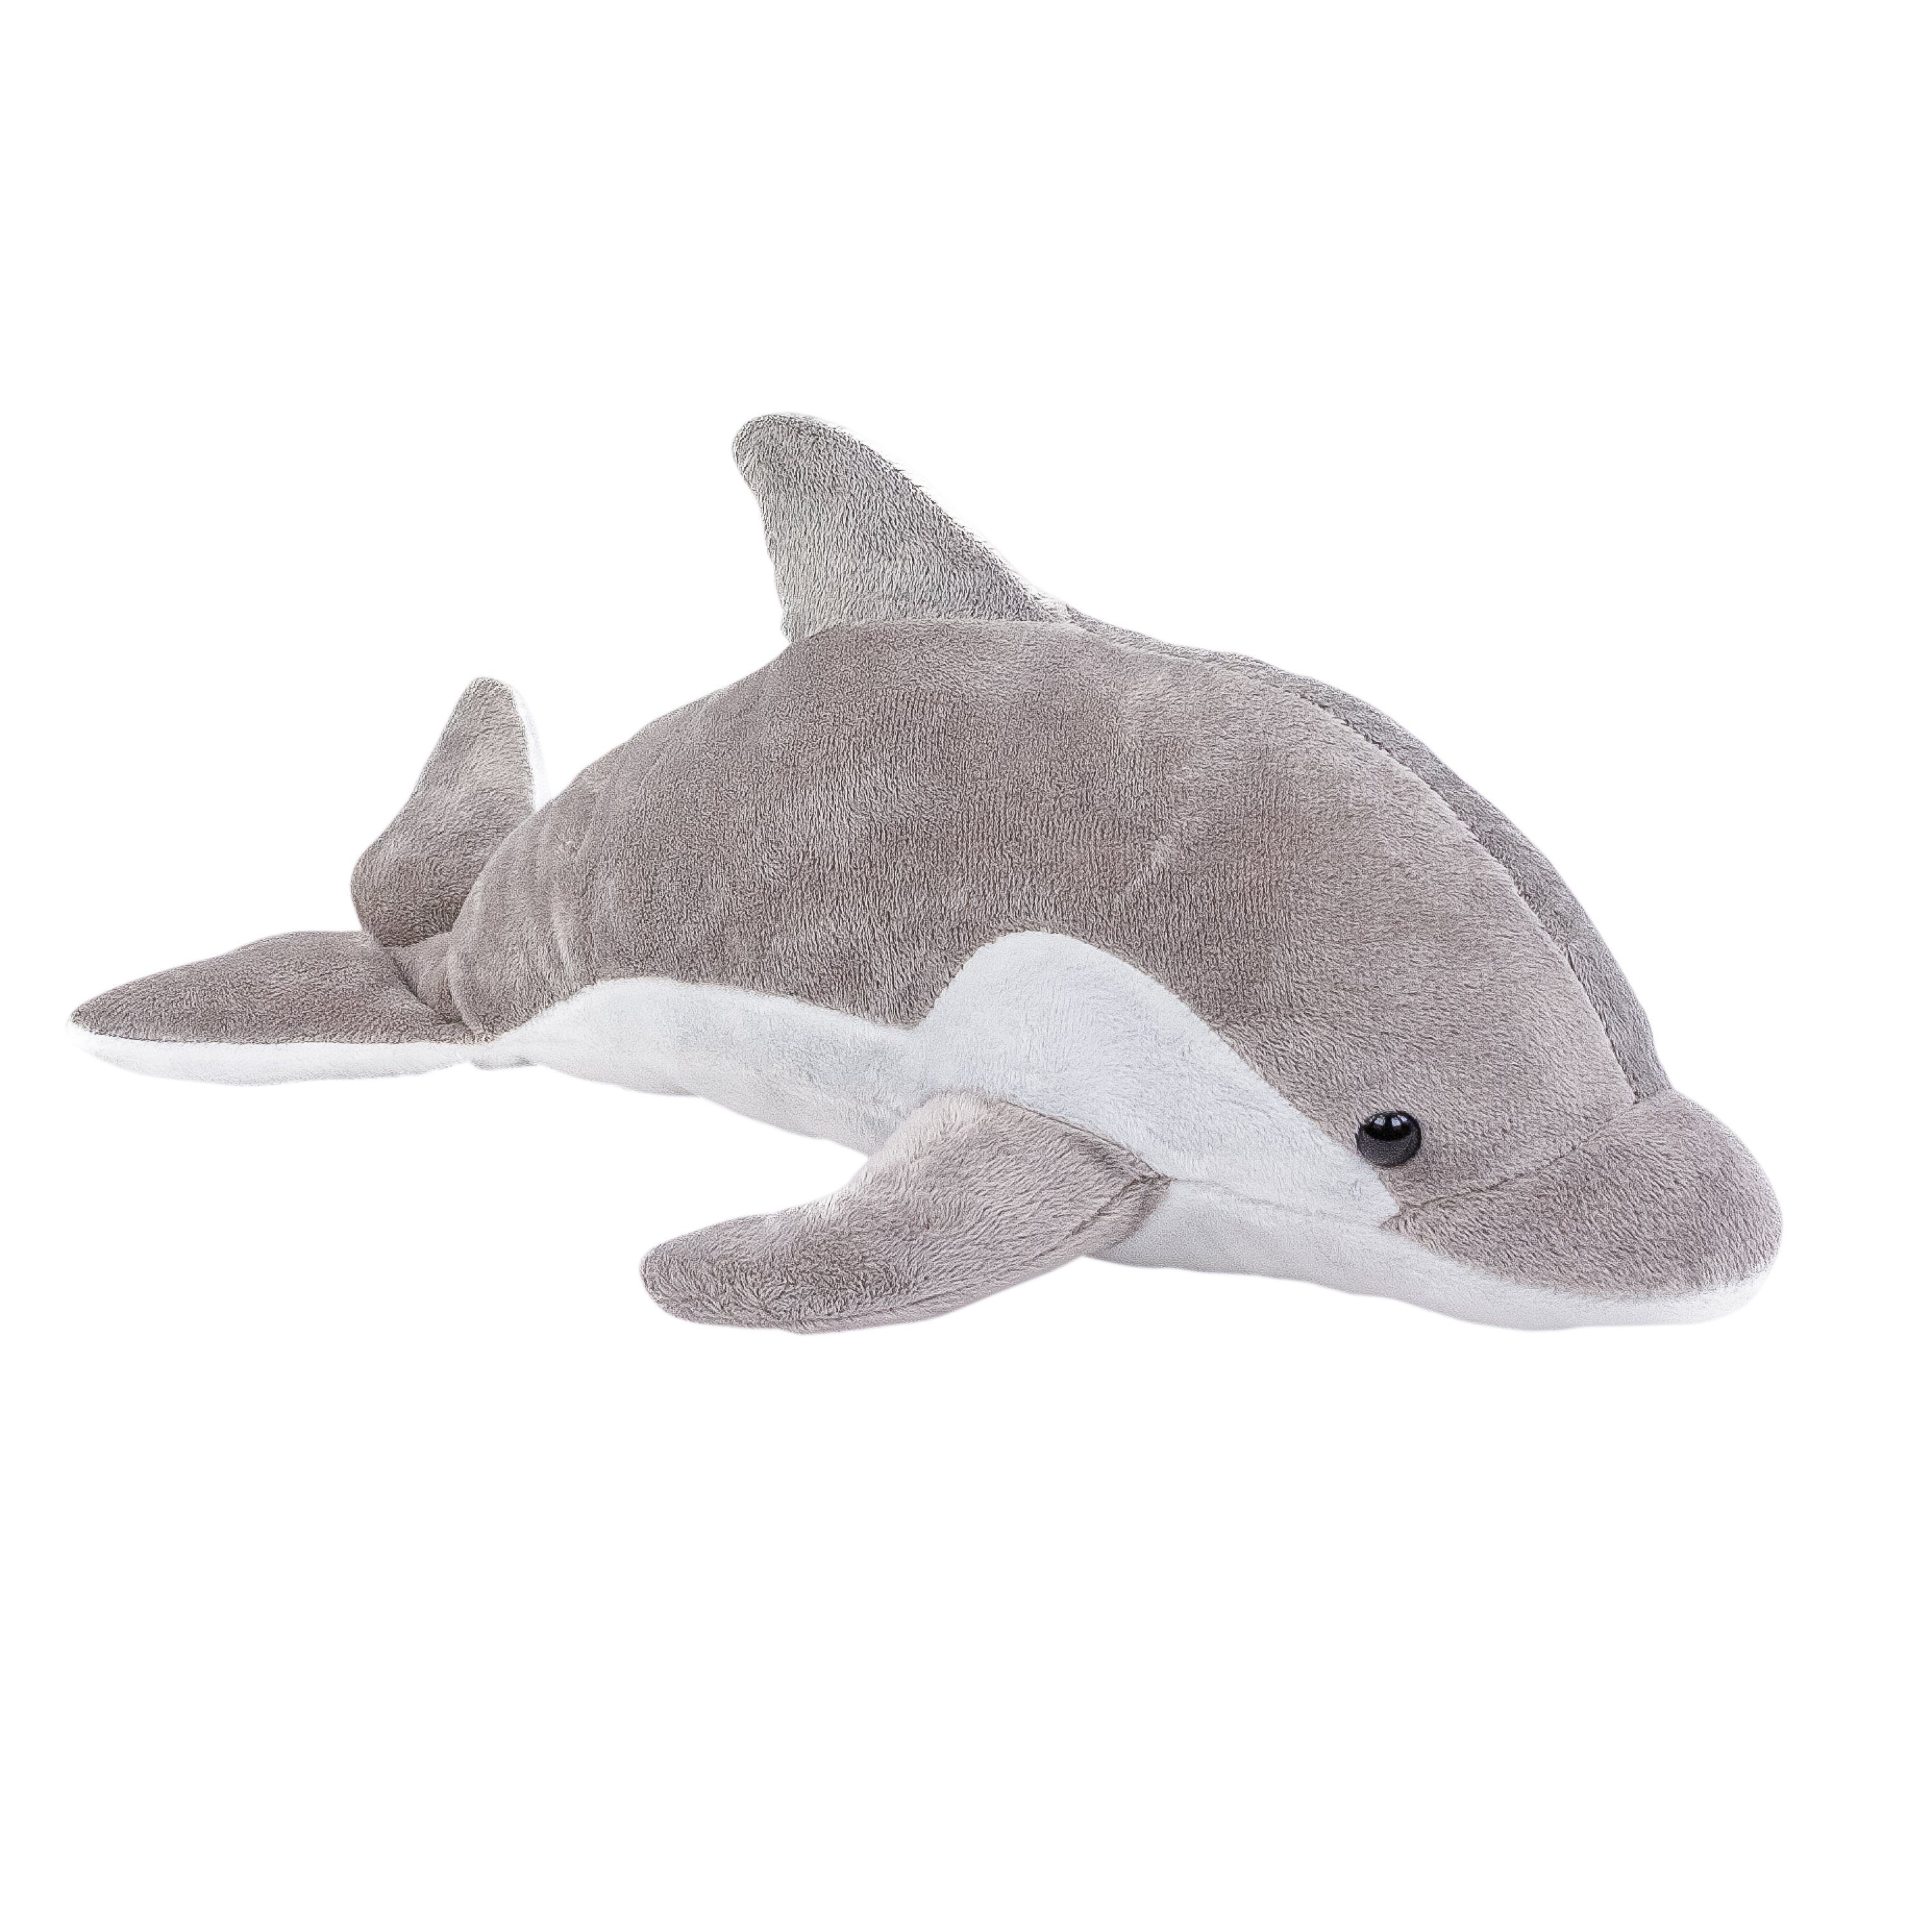 Teddys Rothenburg Kuscheltier Kuscheltier Delfin grau-weiß 38 cm